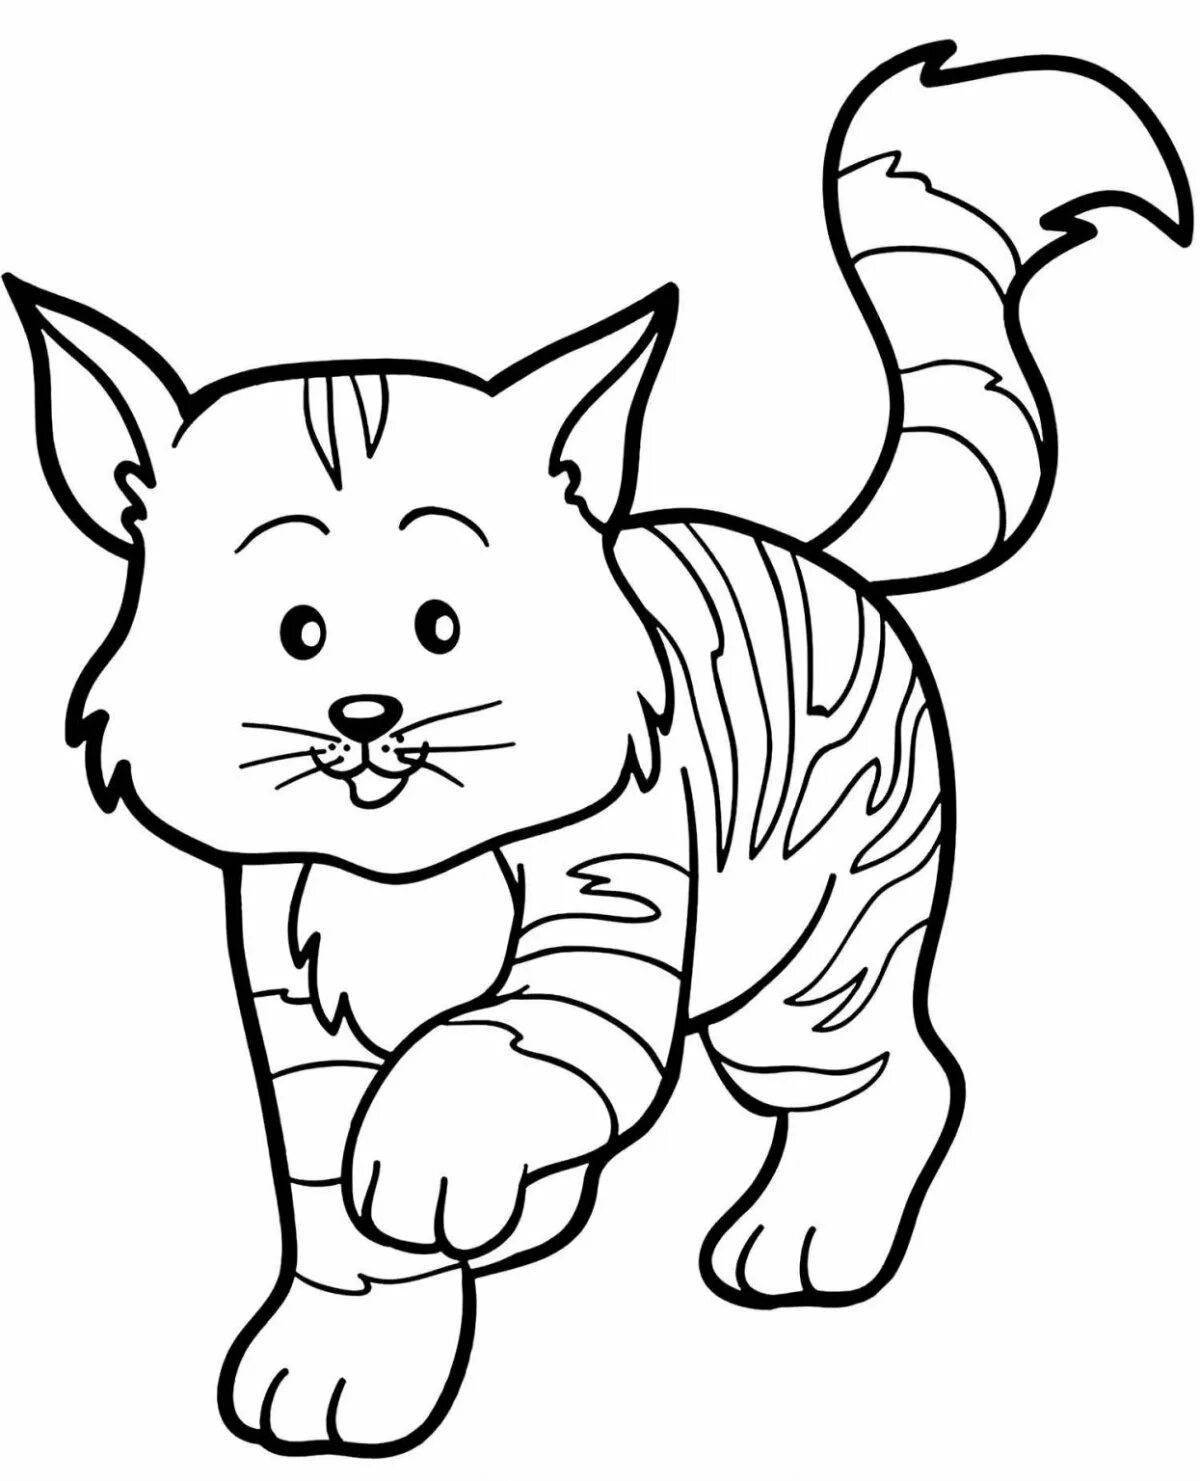 Раскраска сладкий полосатый кот